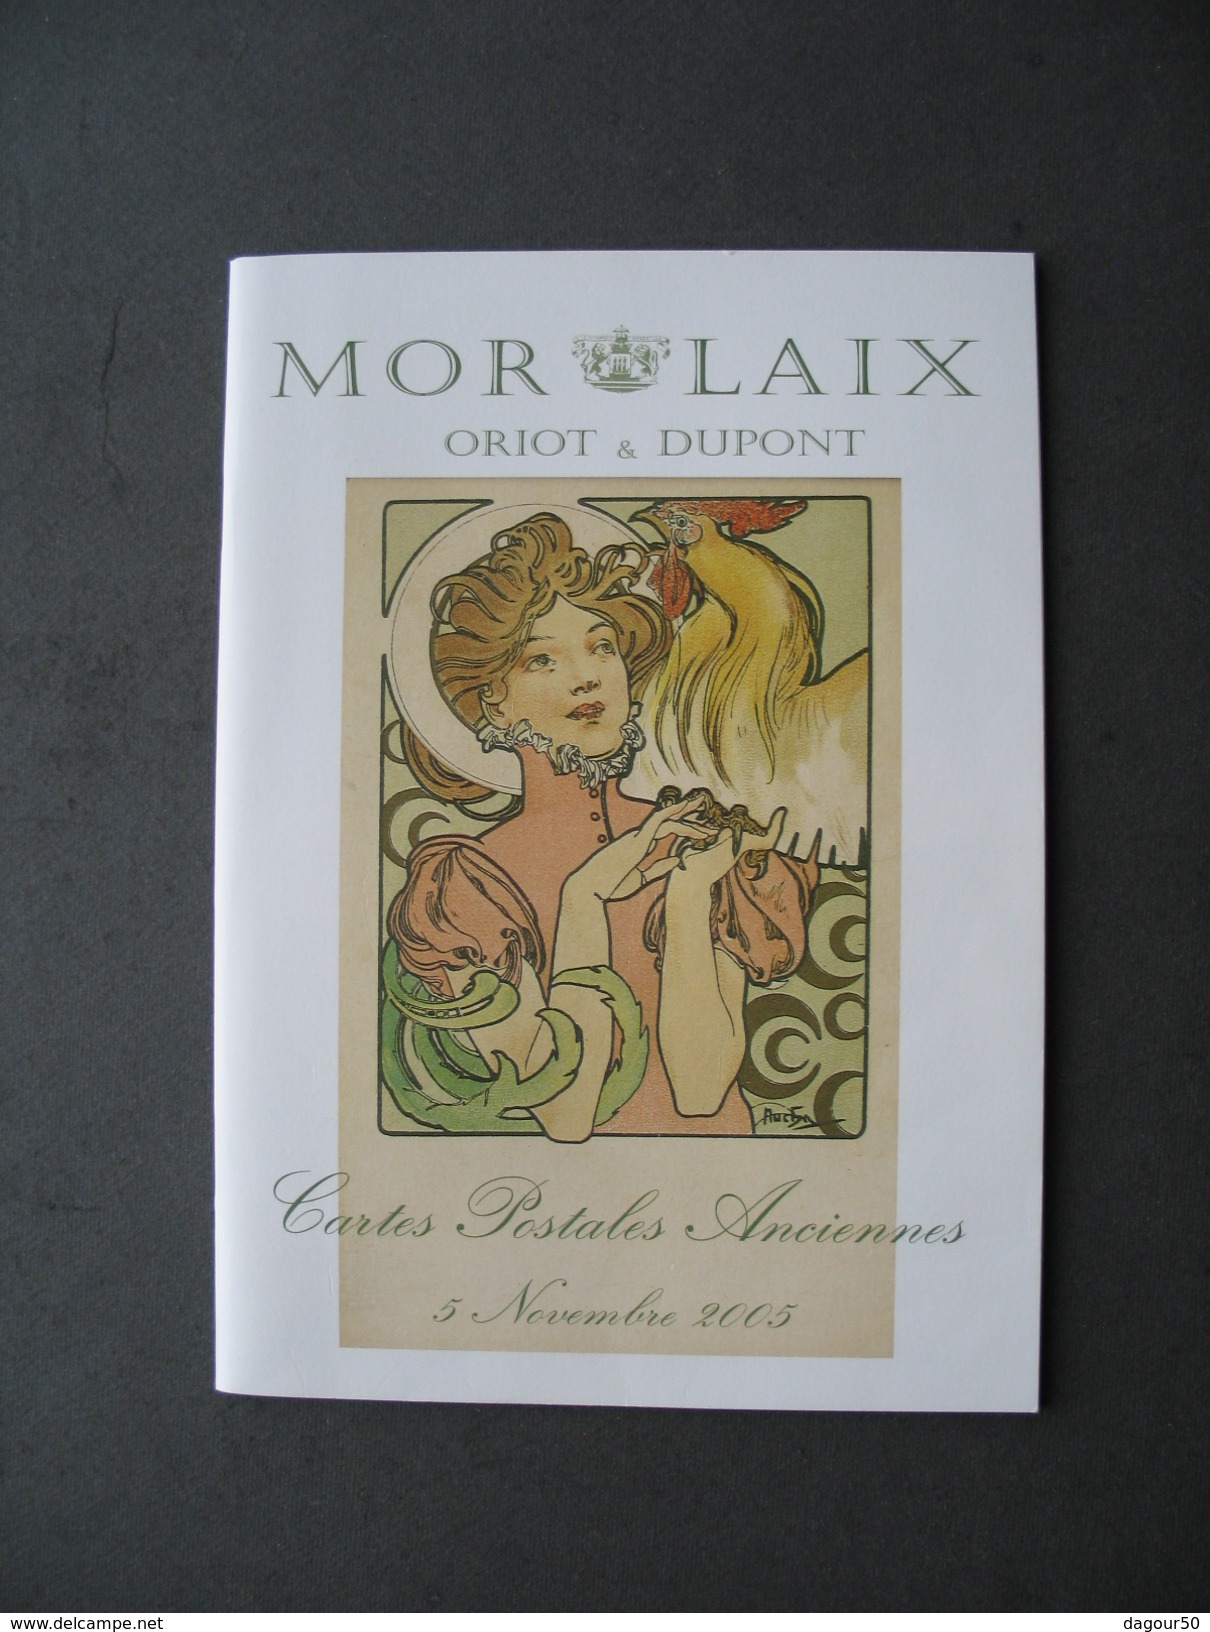 Catalogue ORIOT Et DUPONT MORLAIX, Vente Aux Enchères De Cartes Postales Anciennes Du 5 Novembre 2005 - Livres & Catalogues